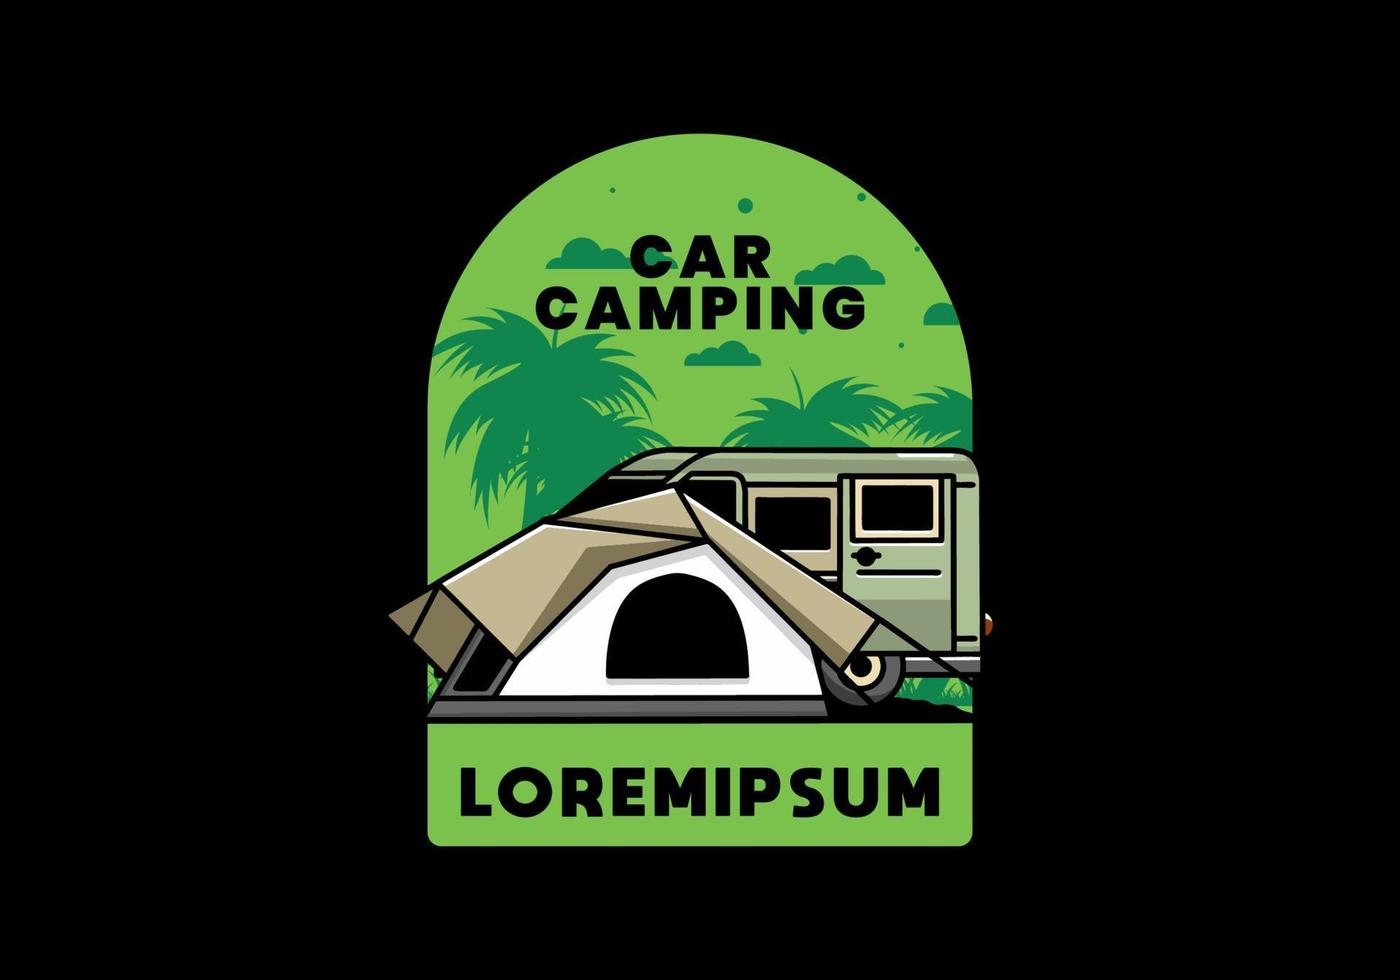 carro de van e design de ilustração de barraca de acampamento vetor